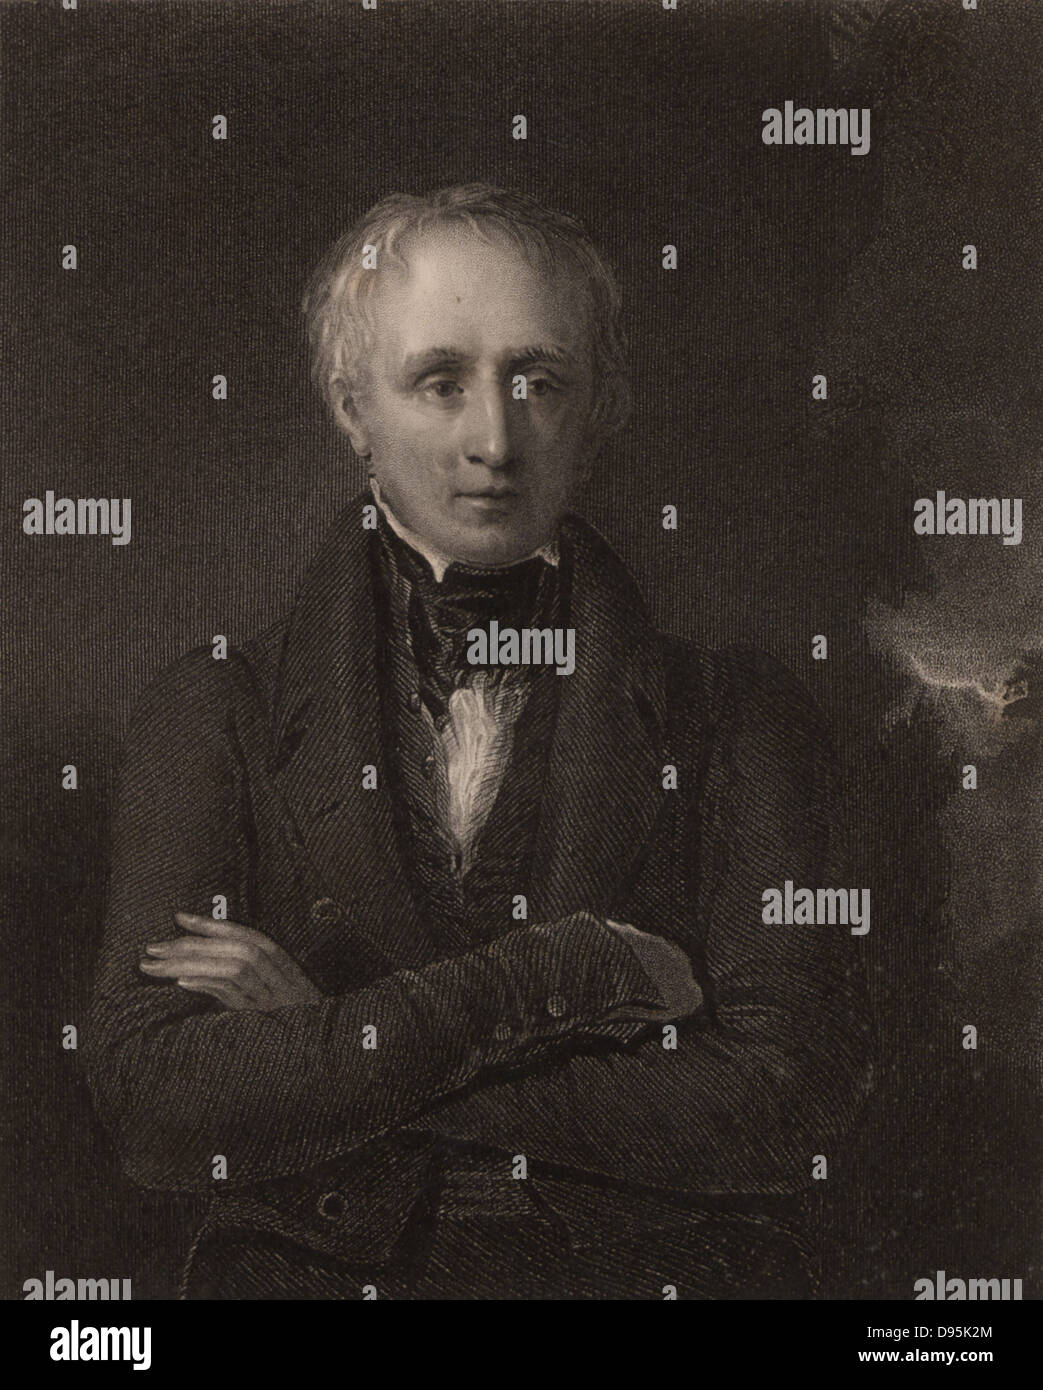 William Wordsworth (1770-1850) poeta inglese nato a Cockermouth, Cumbria. Subentrato a Robert Southey come poeta laureato in 1843. Incisione da 'National Portrait Gallery" (Londra, 1833). Foto Stock